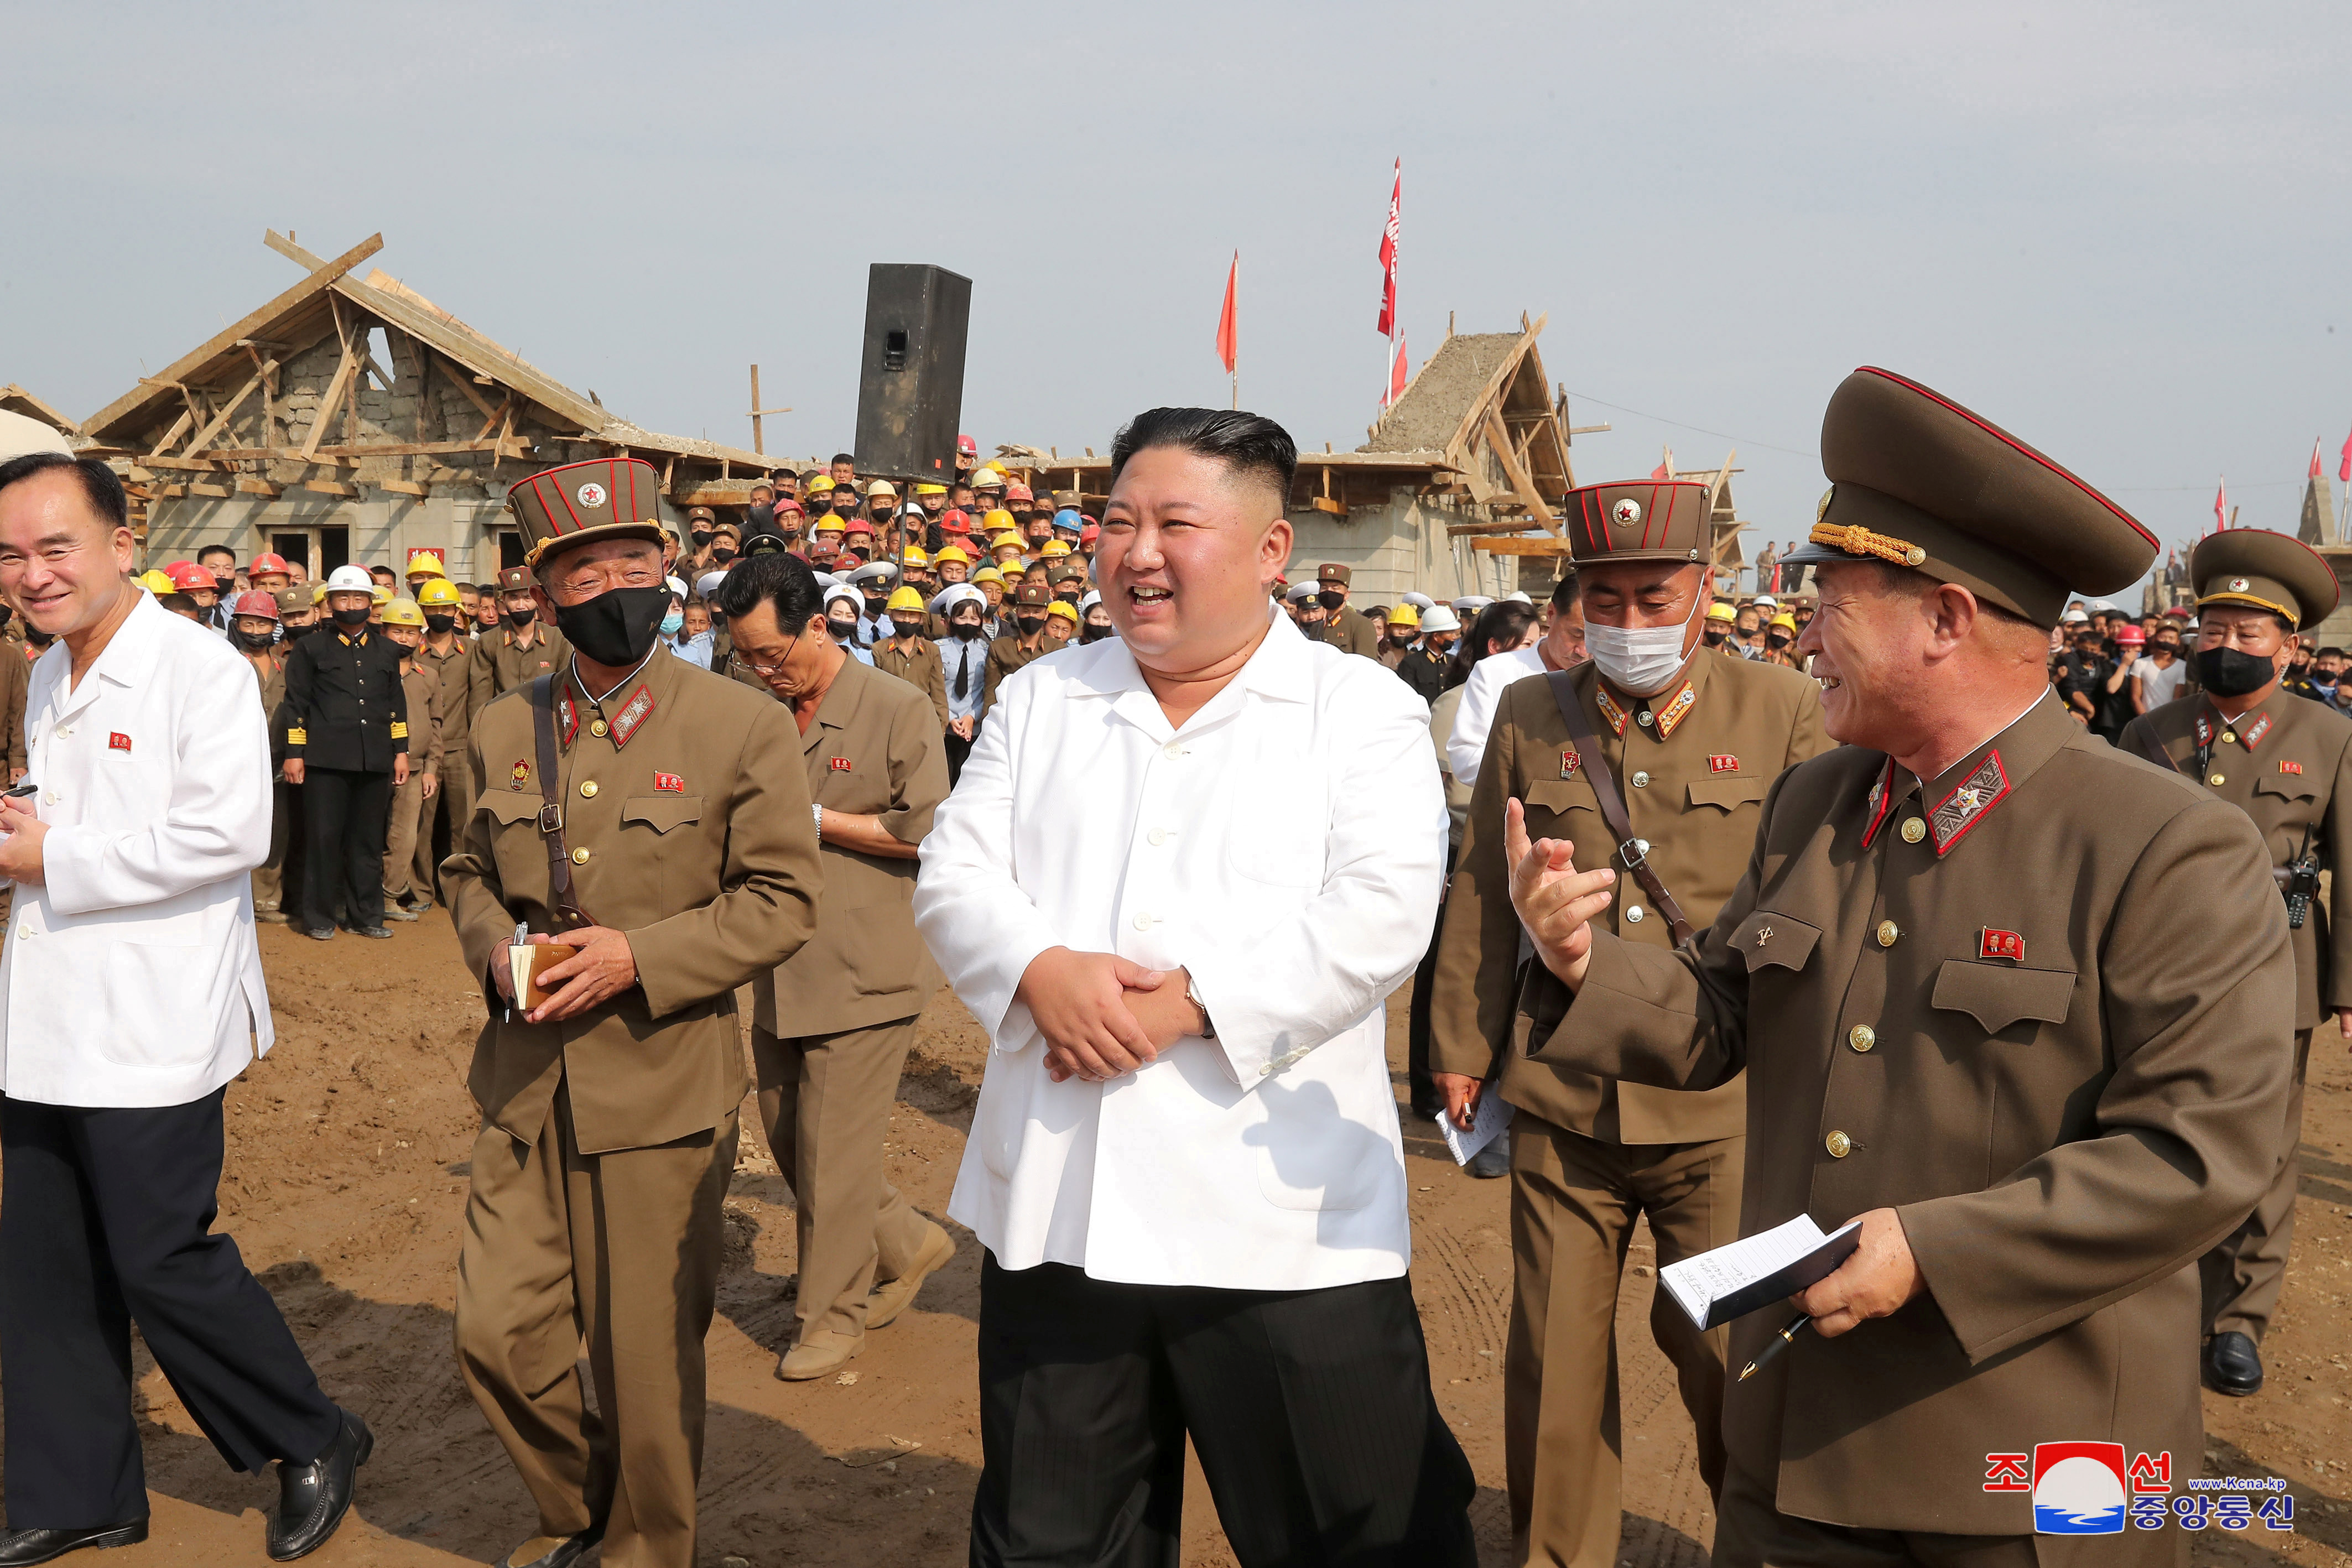 El líder norcoreano, Kim Jong Un. KCNA via REUTERS